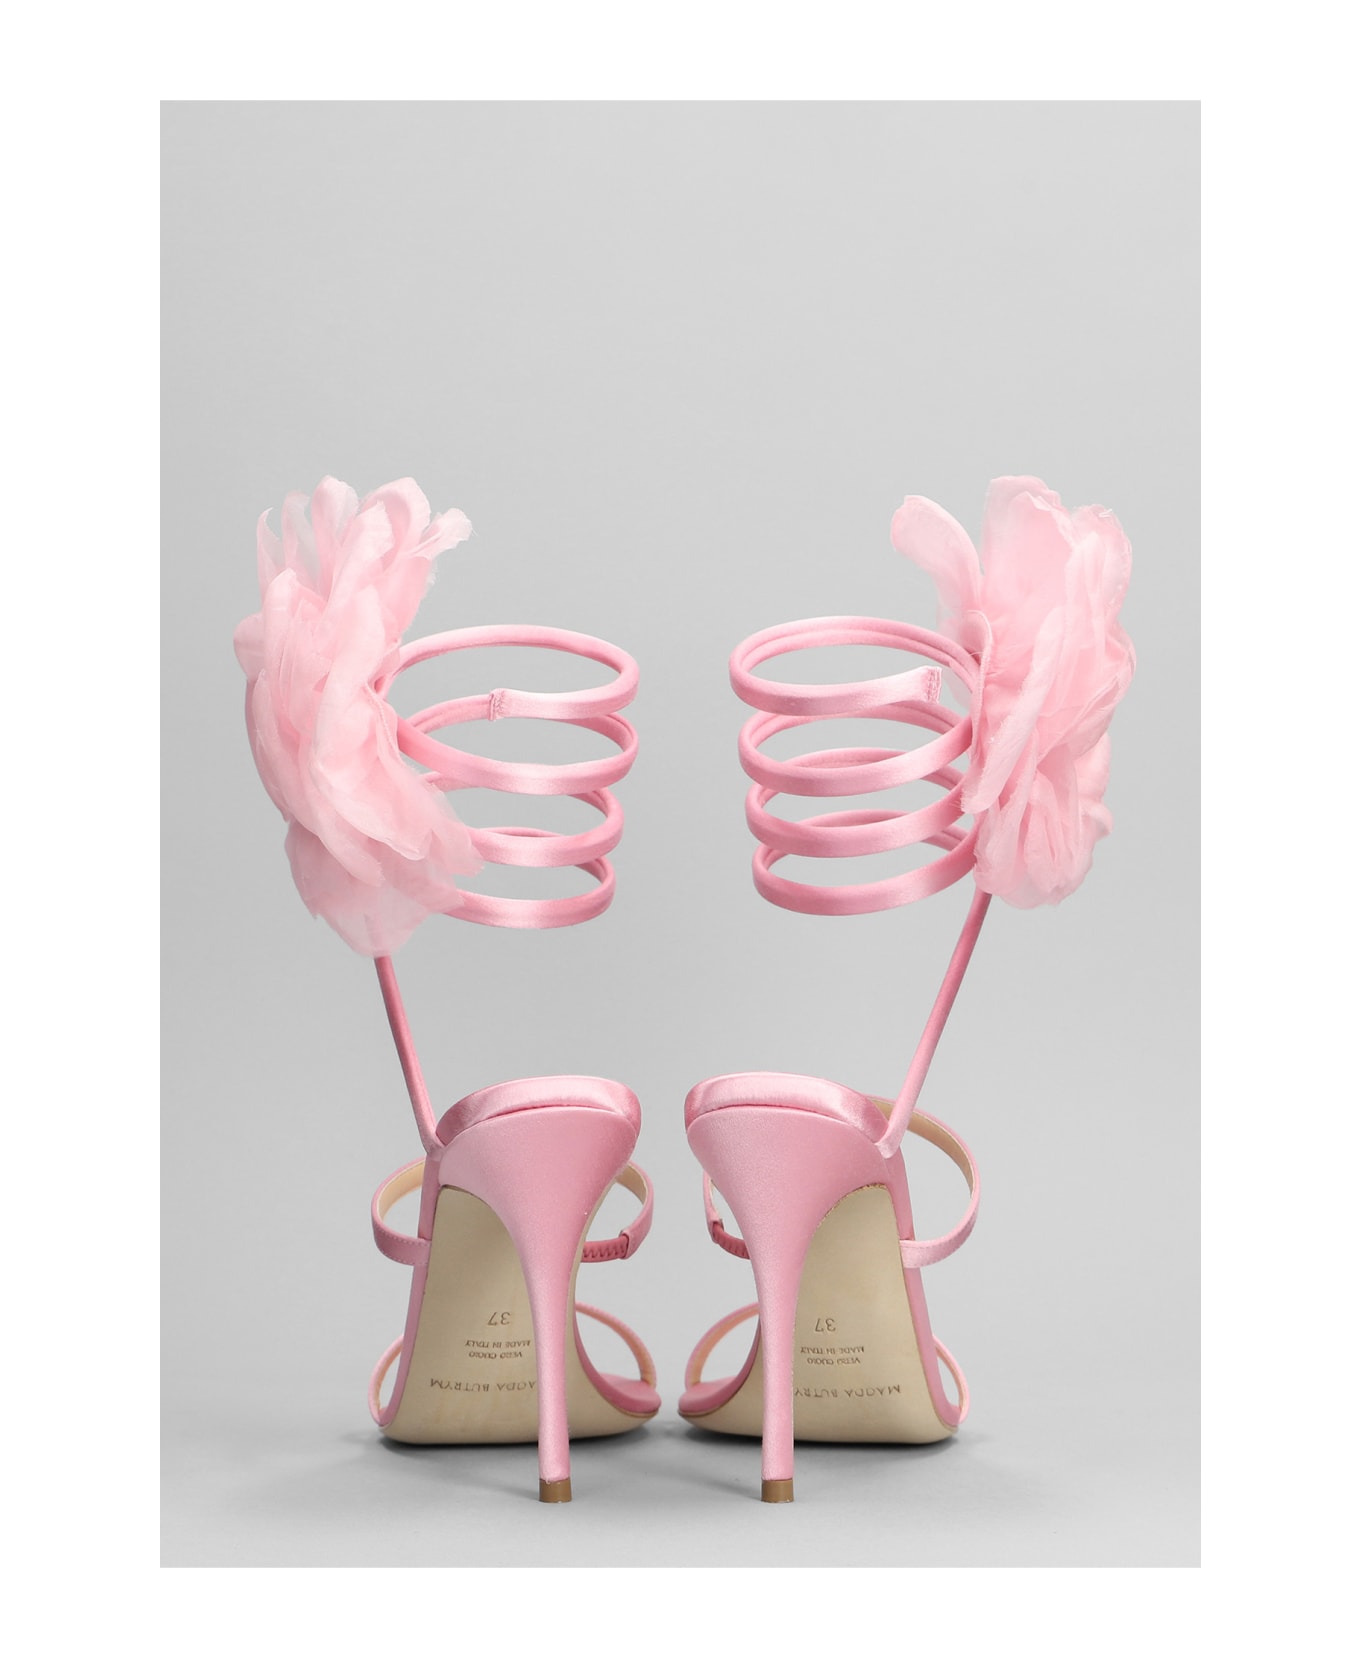 Magda Butrym Sandals In Rose-pink Viscose - rose-pink